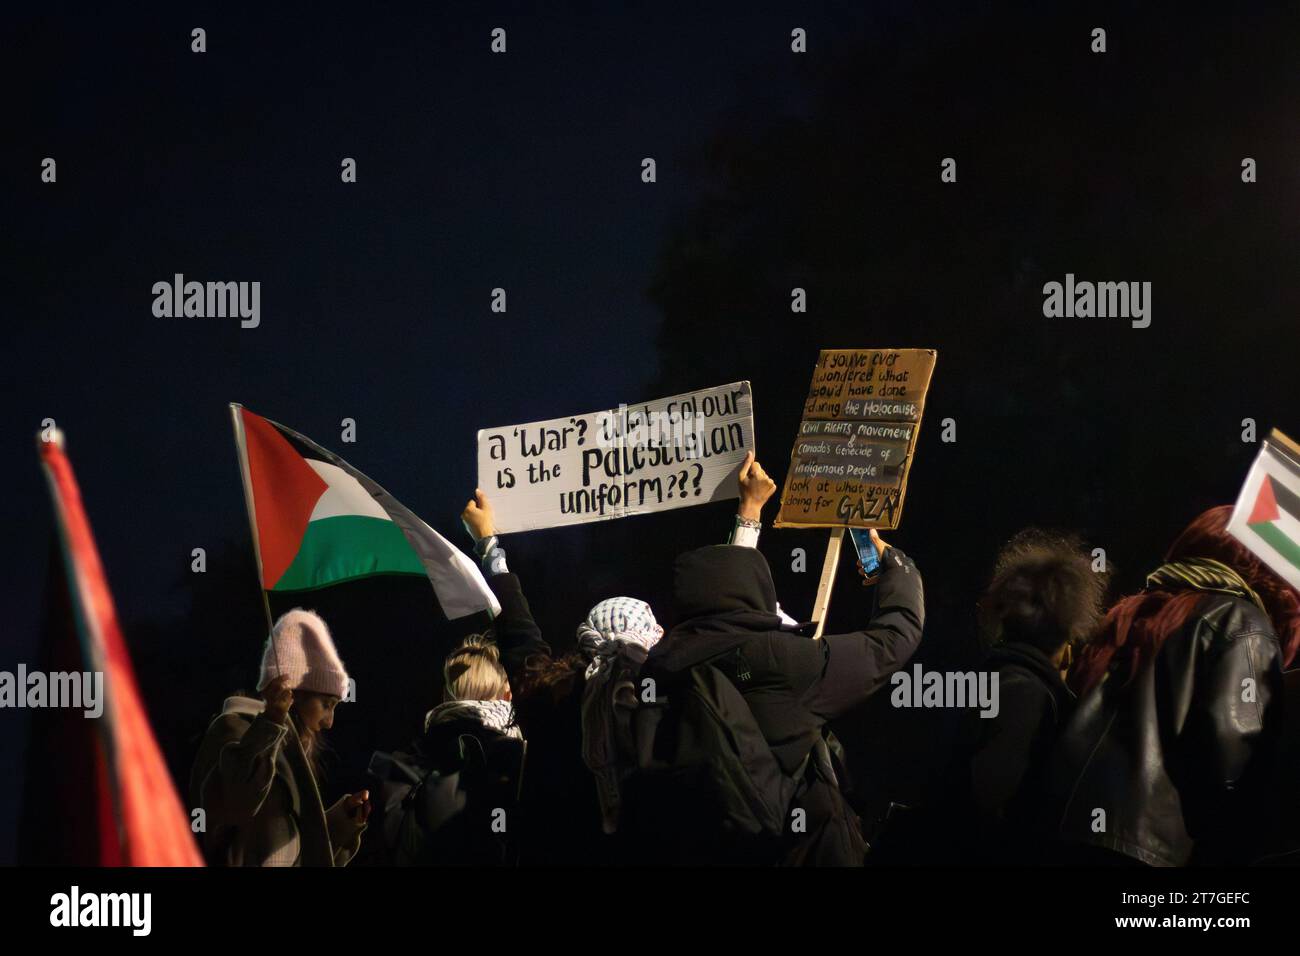 Protesta pro-palestinese alla camera dei comuni Foto Stock